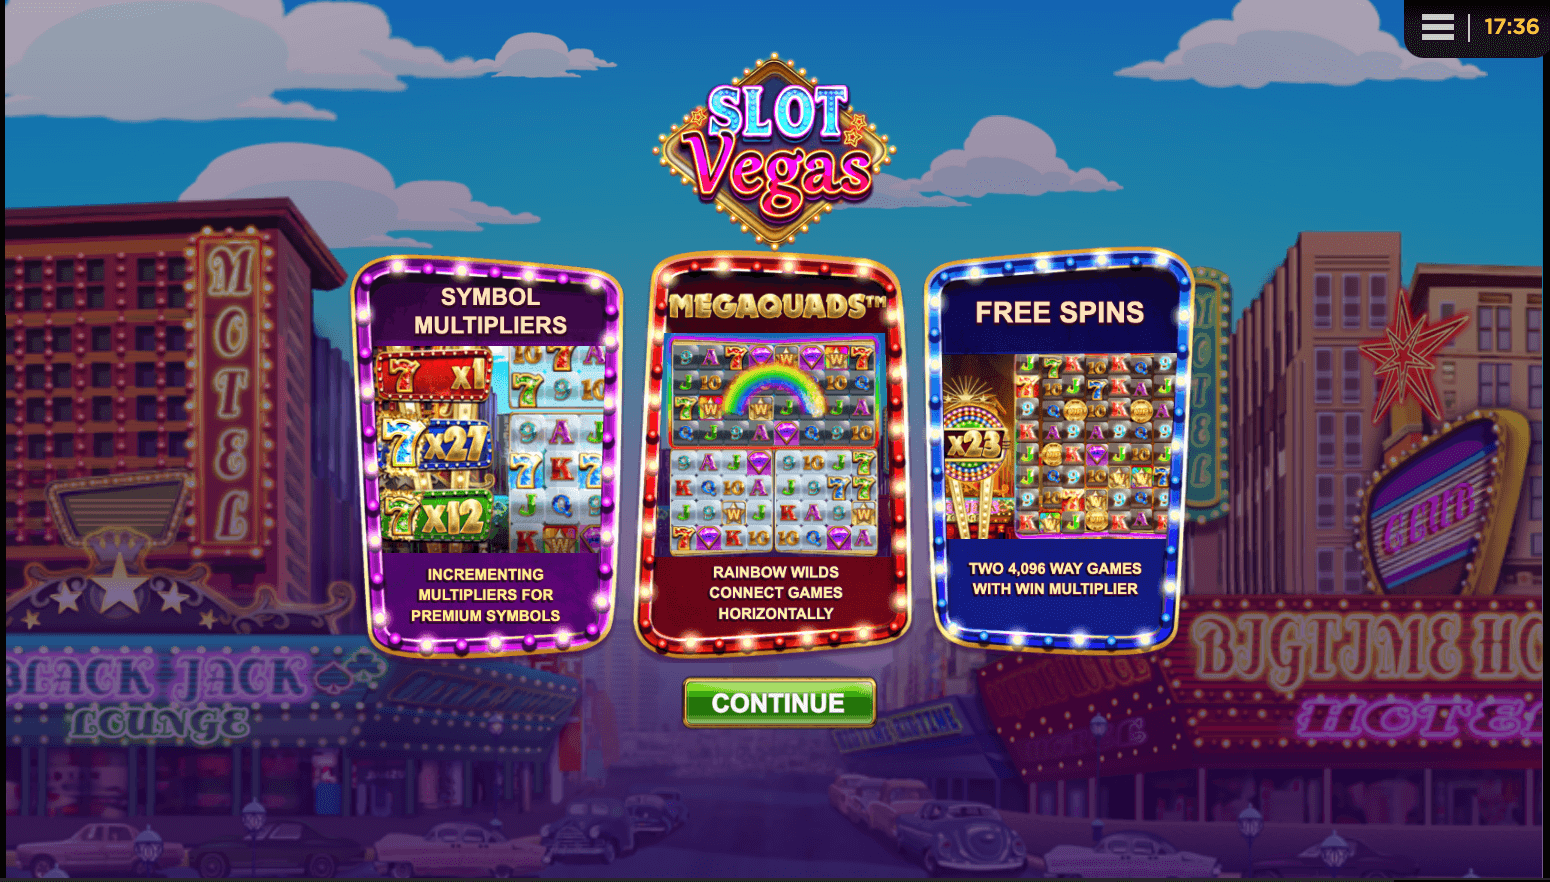 Slot Vegas Megaquads Processo do jogo